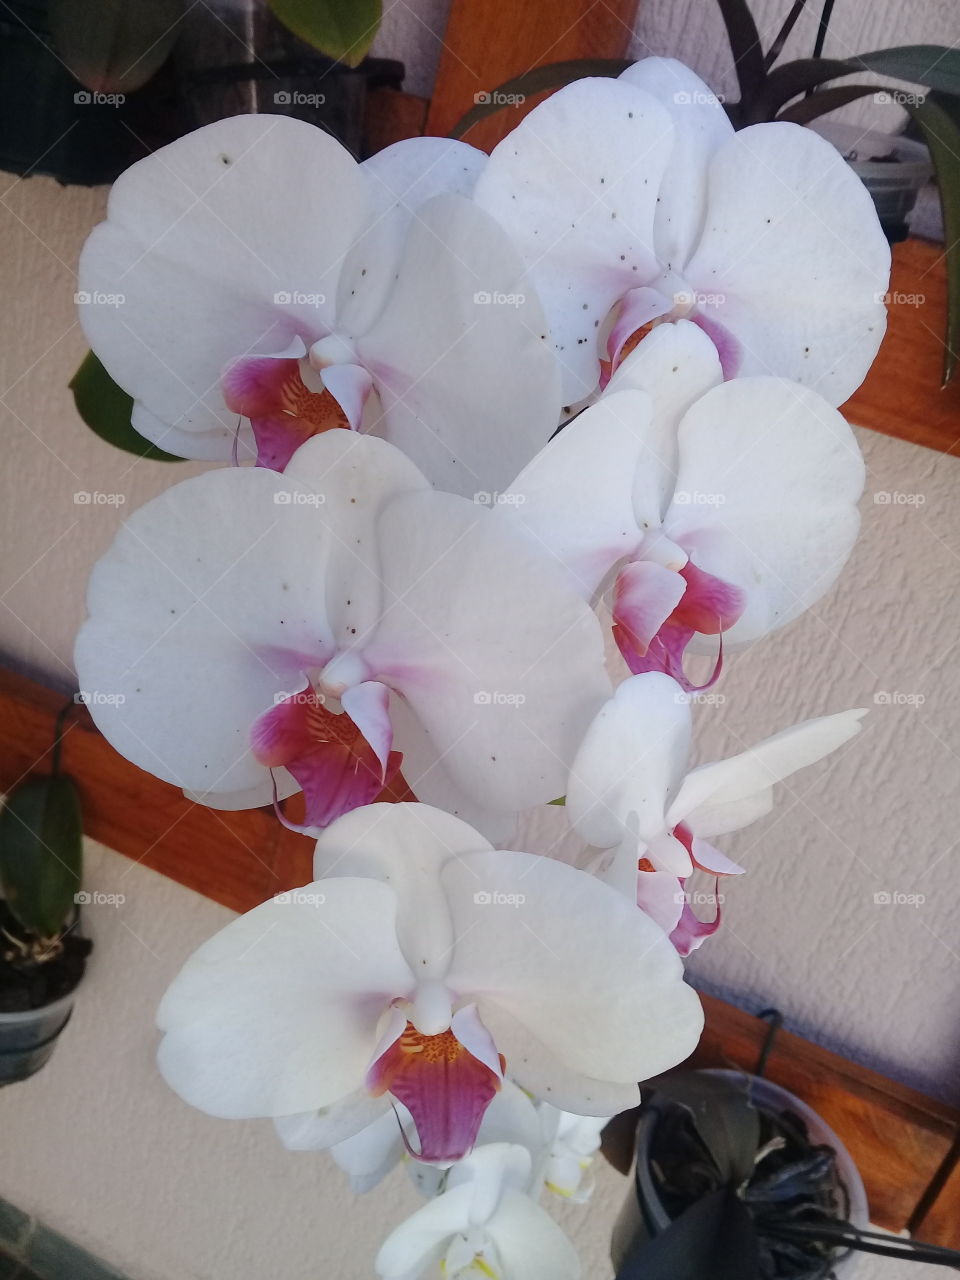 #Orquídeas muito bonitas embelezando nosso ambiente. A #natureza, sem dúvida, é muito bela.